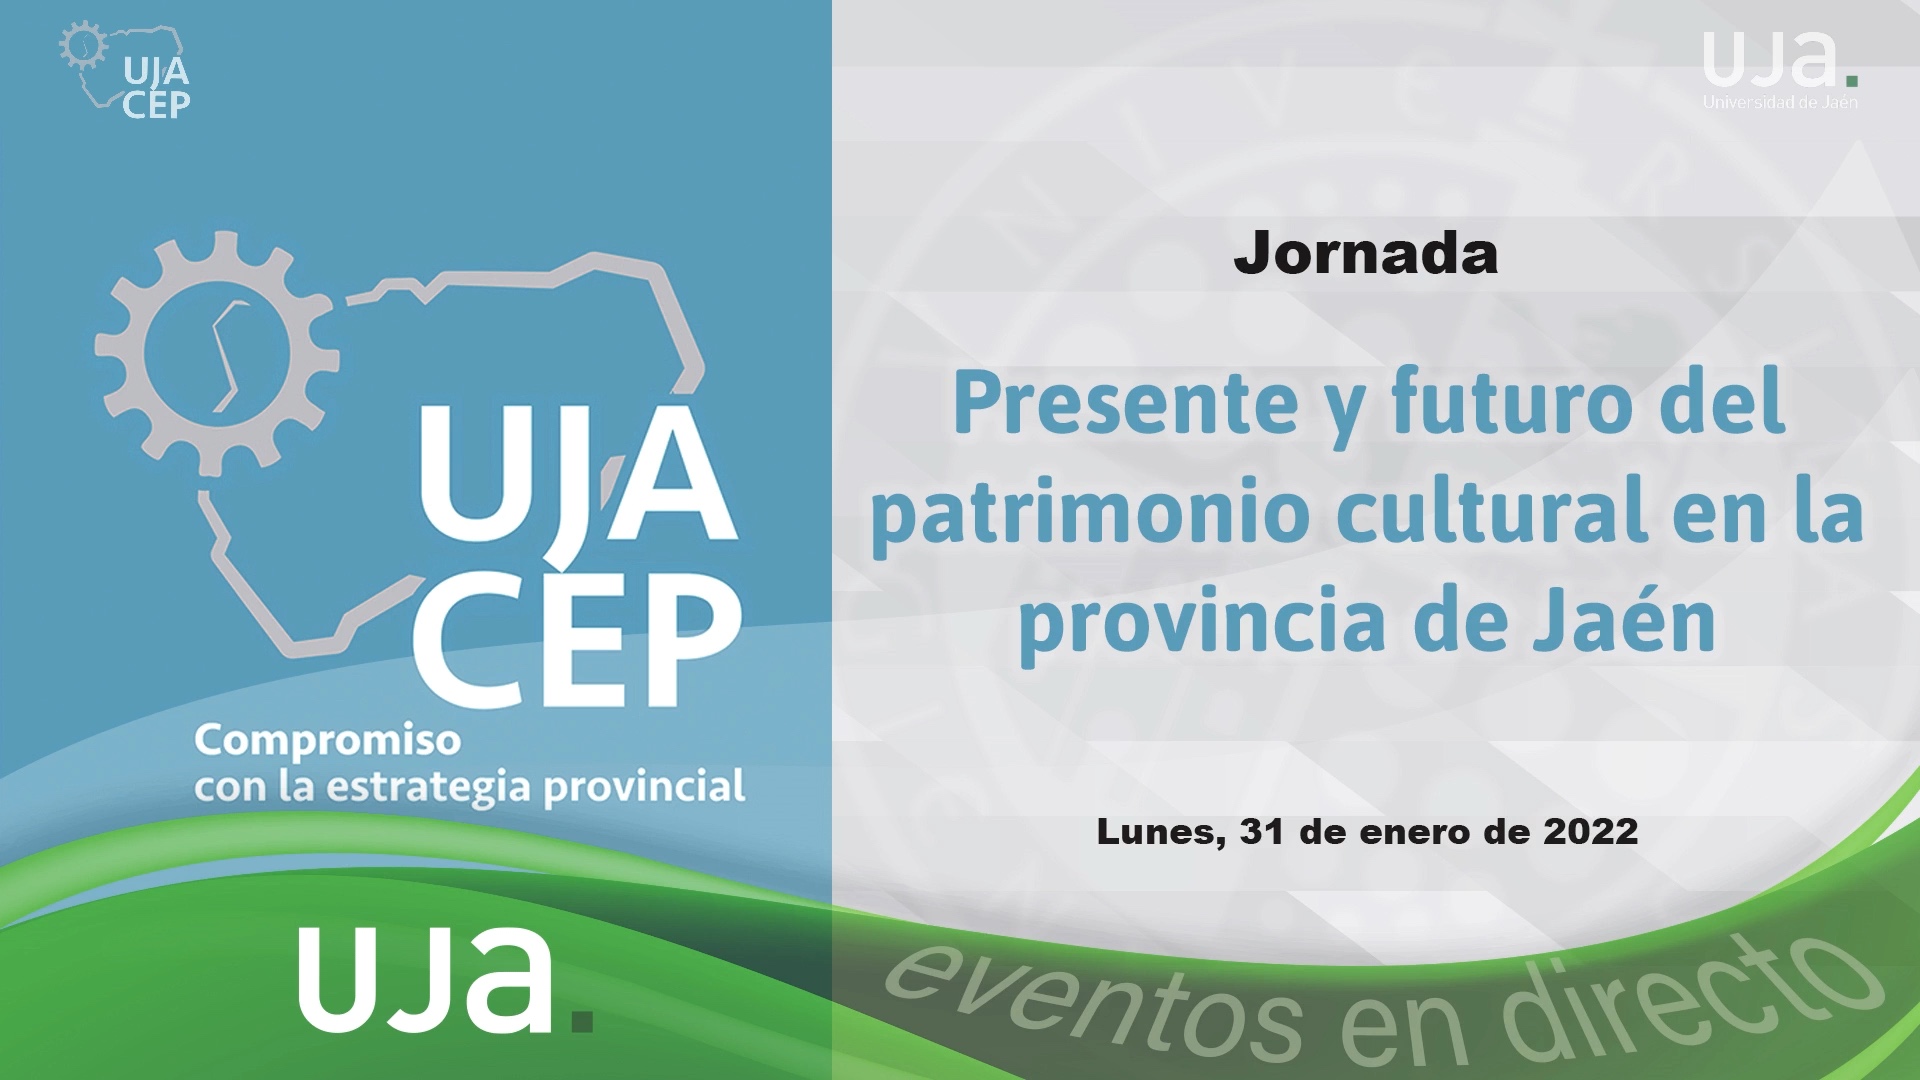 Jornada "Presente y futuro del patrimonio cultural en la provincia de Jaén"